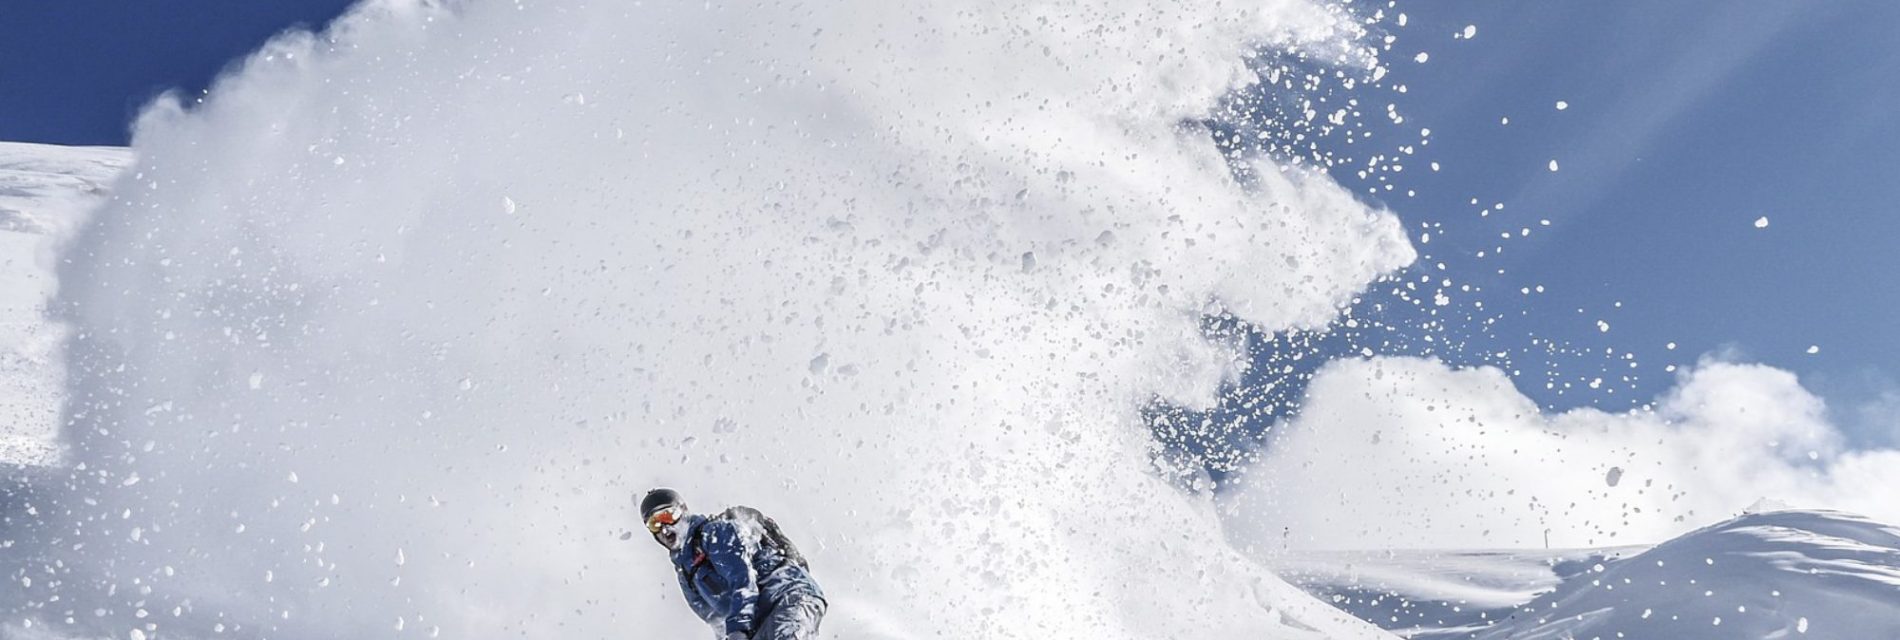 Vacances à la montagne. Homme en snowboard sur les pistes. Grande tracé de neige derrière lui.